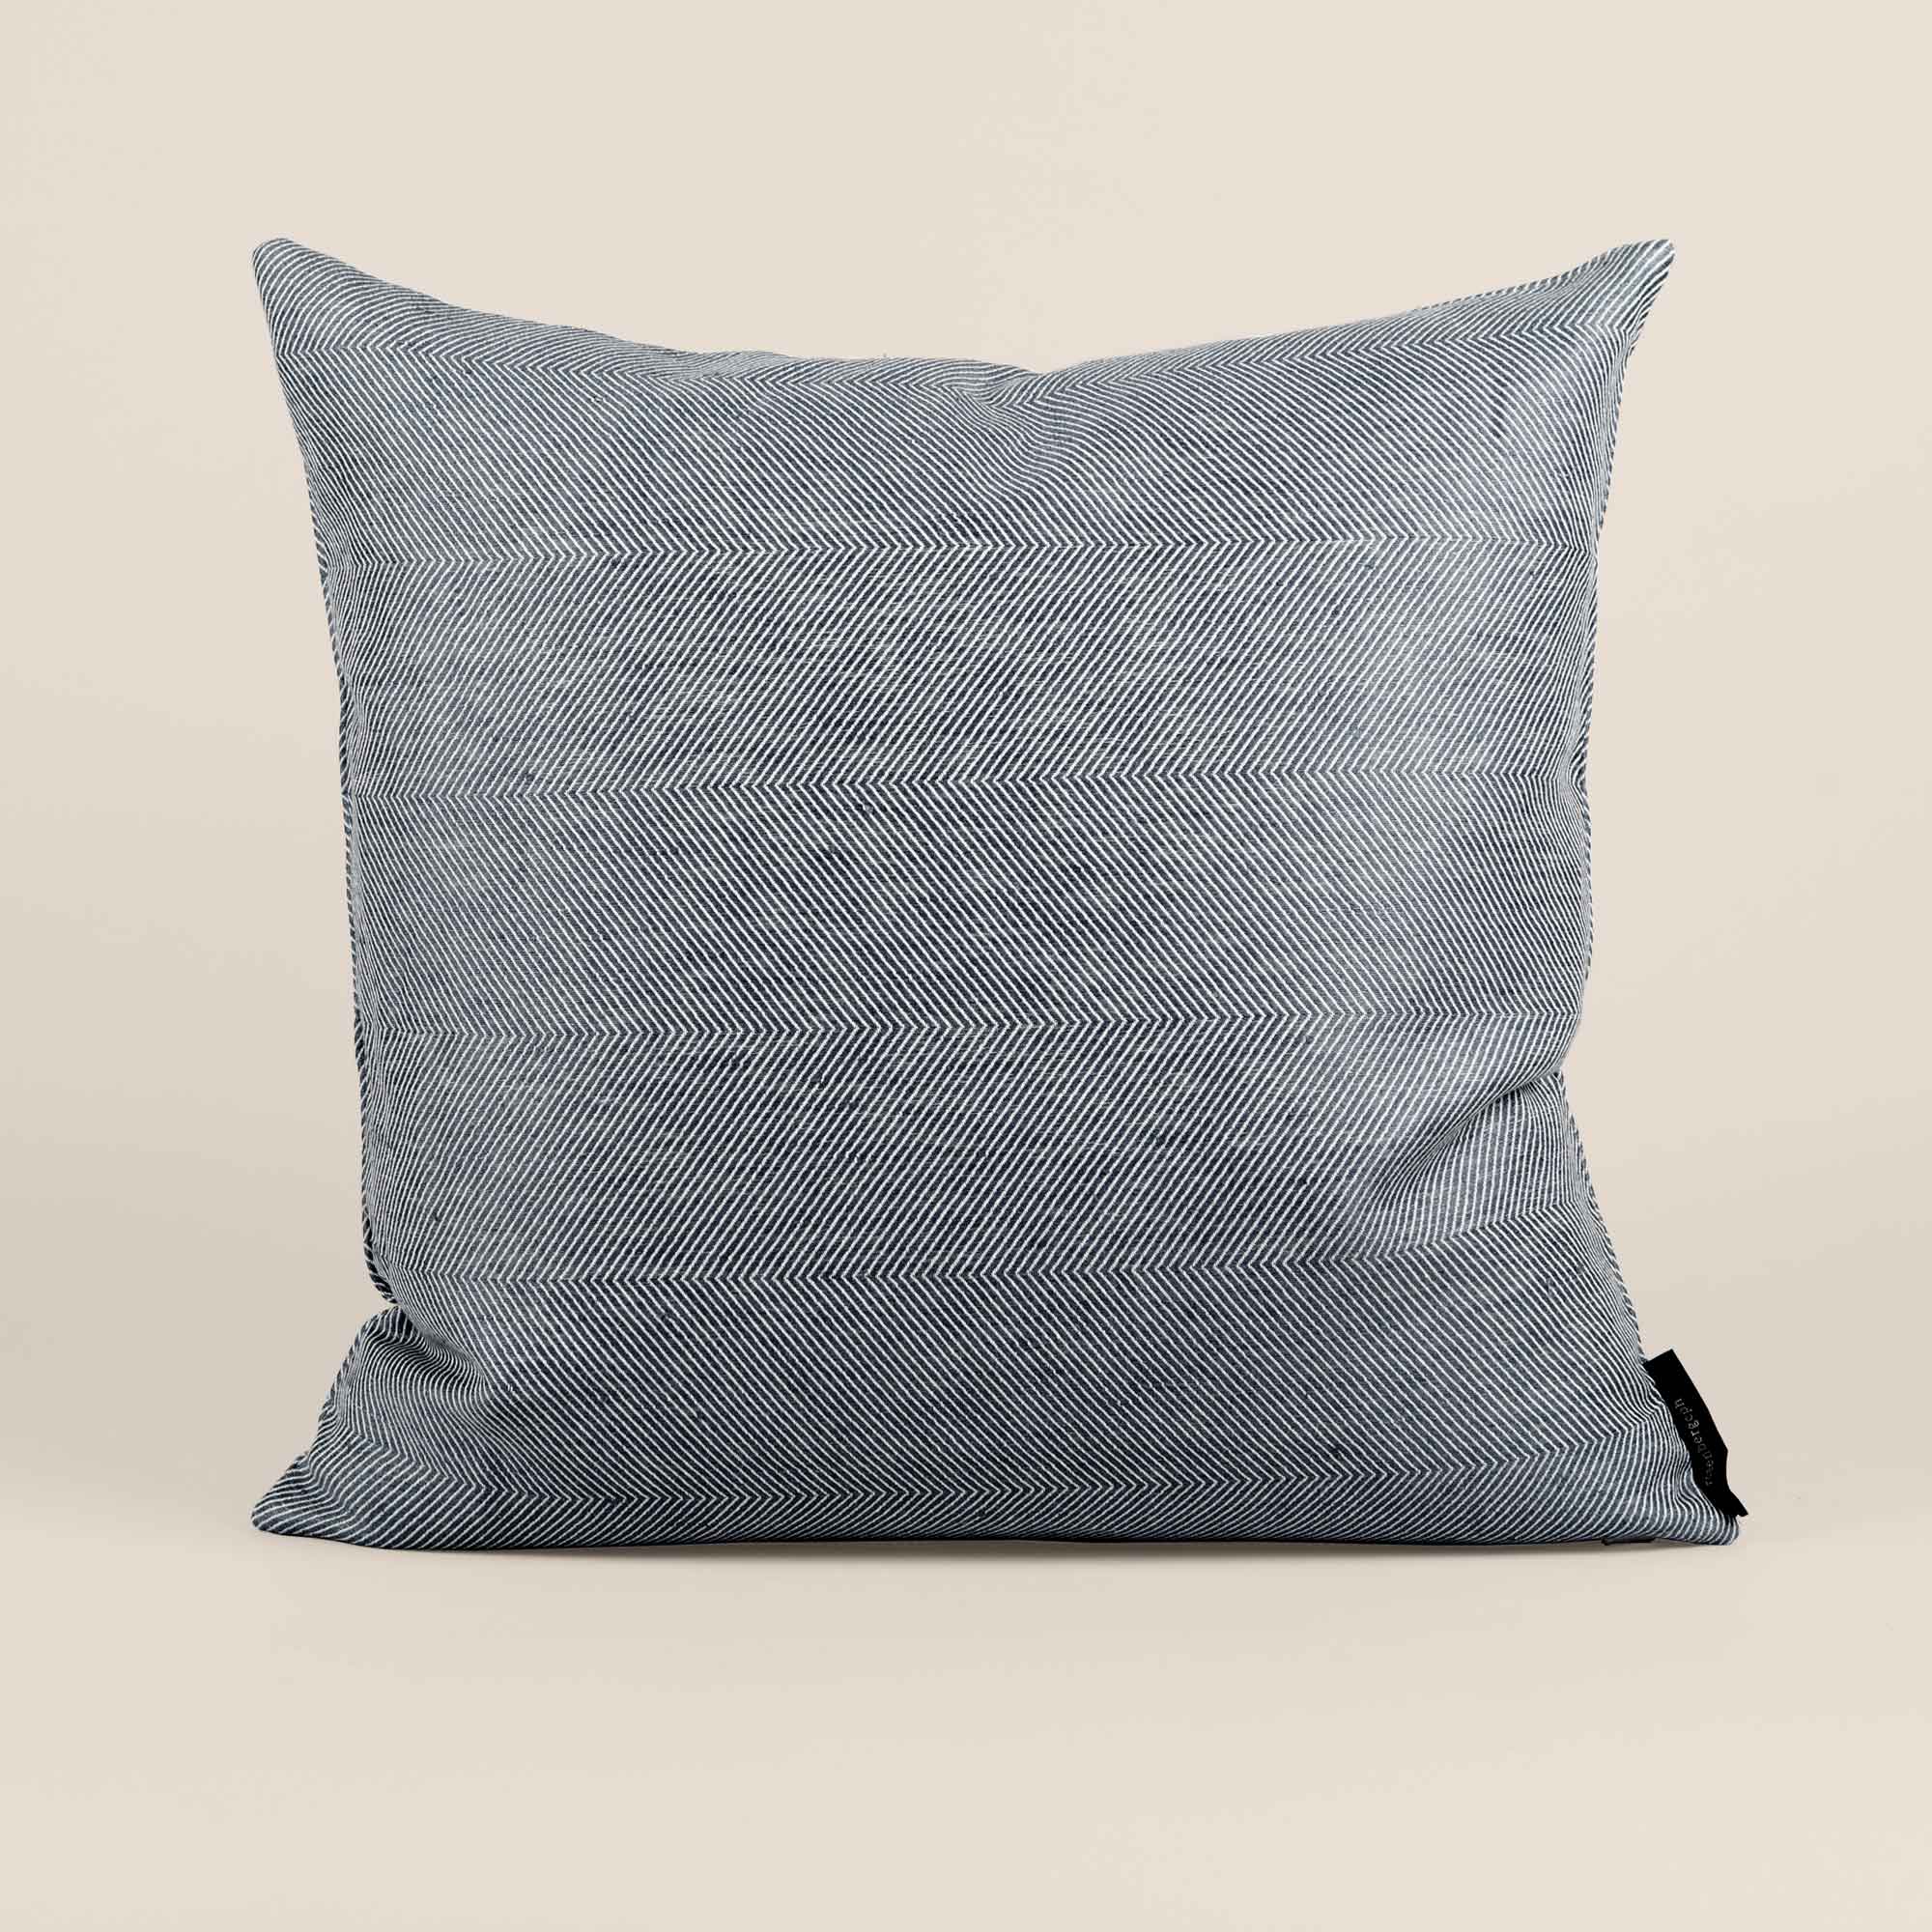 Square cushion linen/cotton indigo blue design by Anne Rosenberg, RosenbergCph